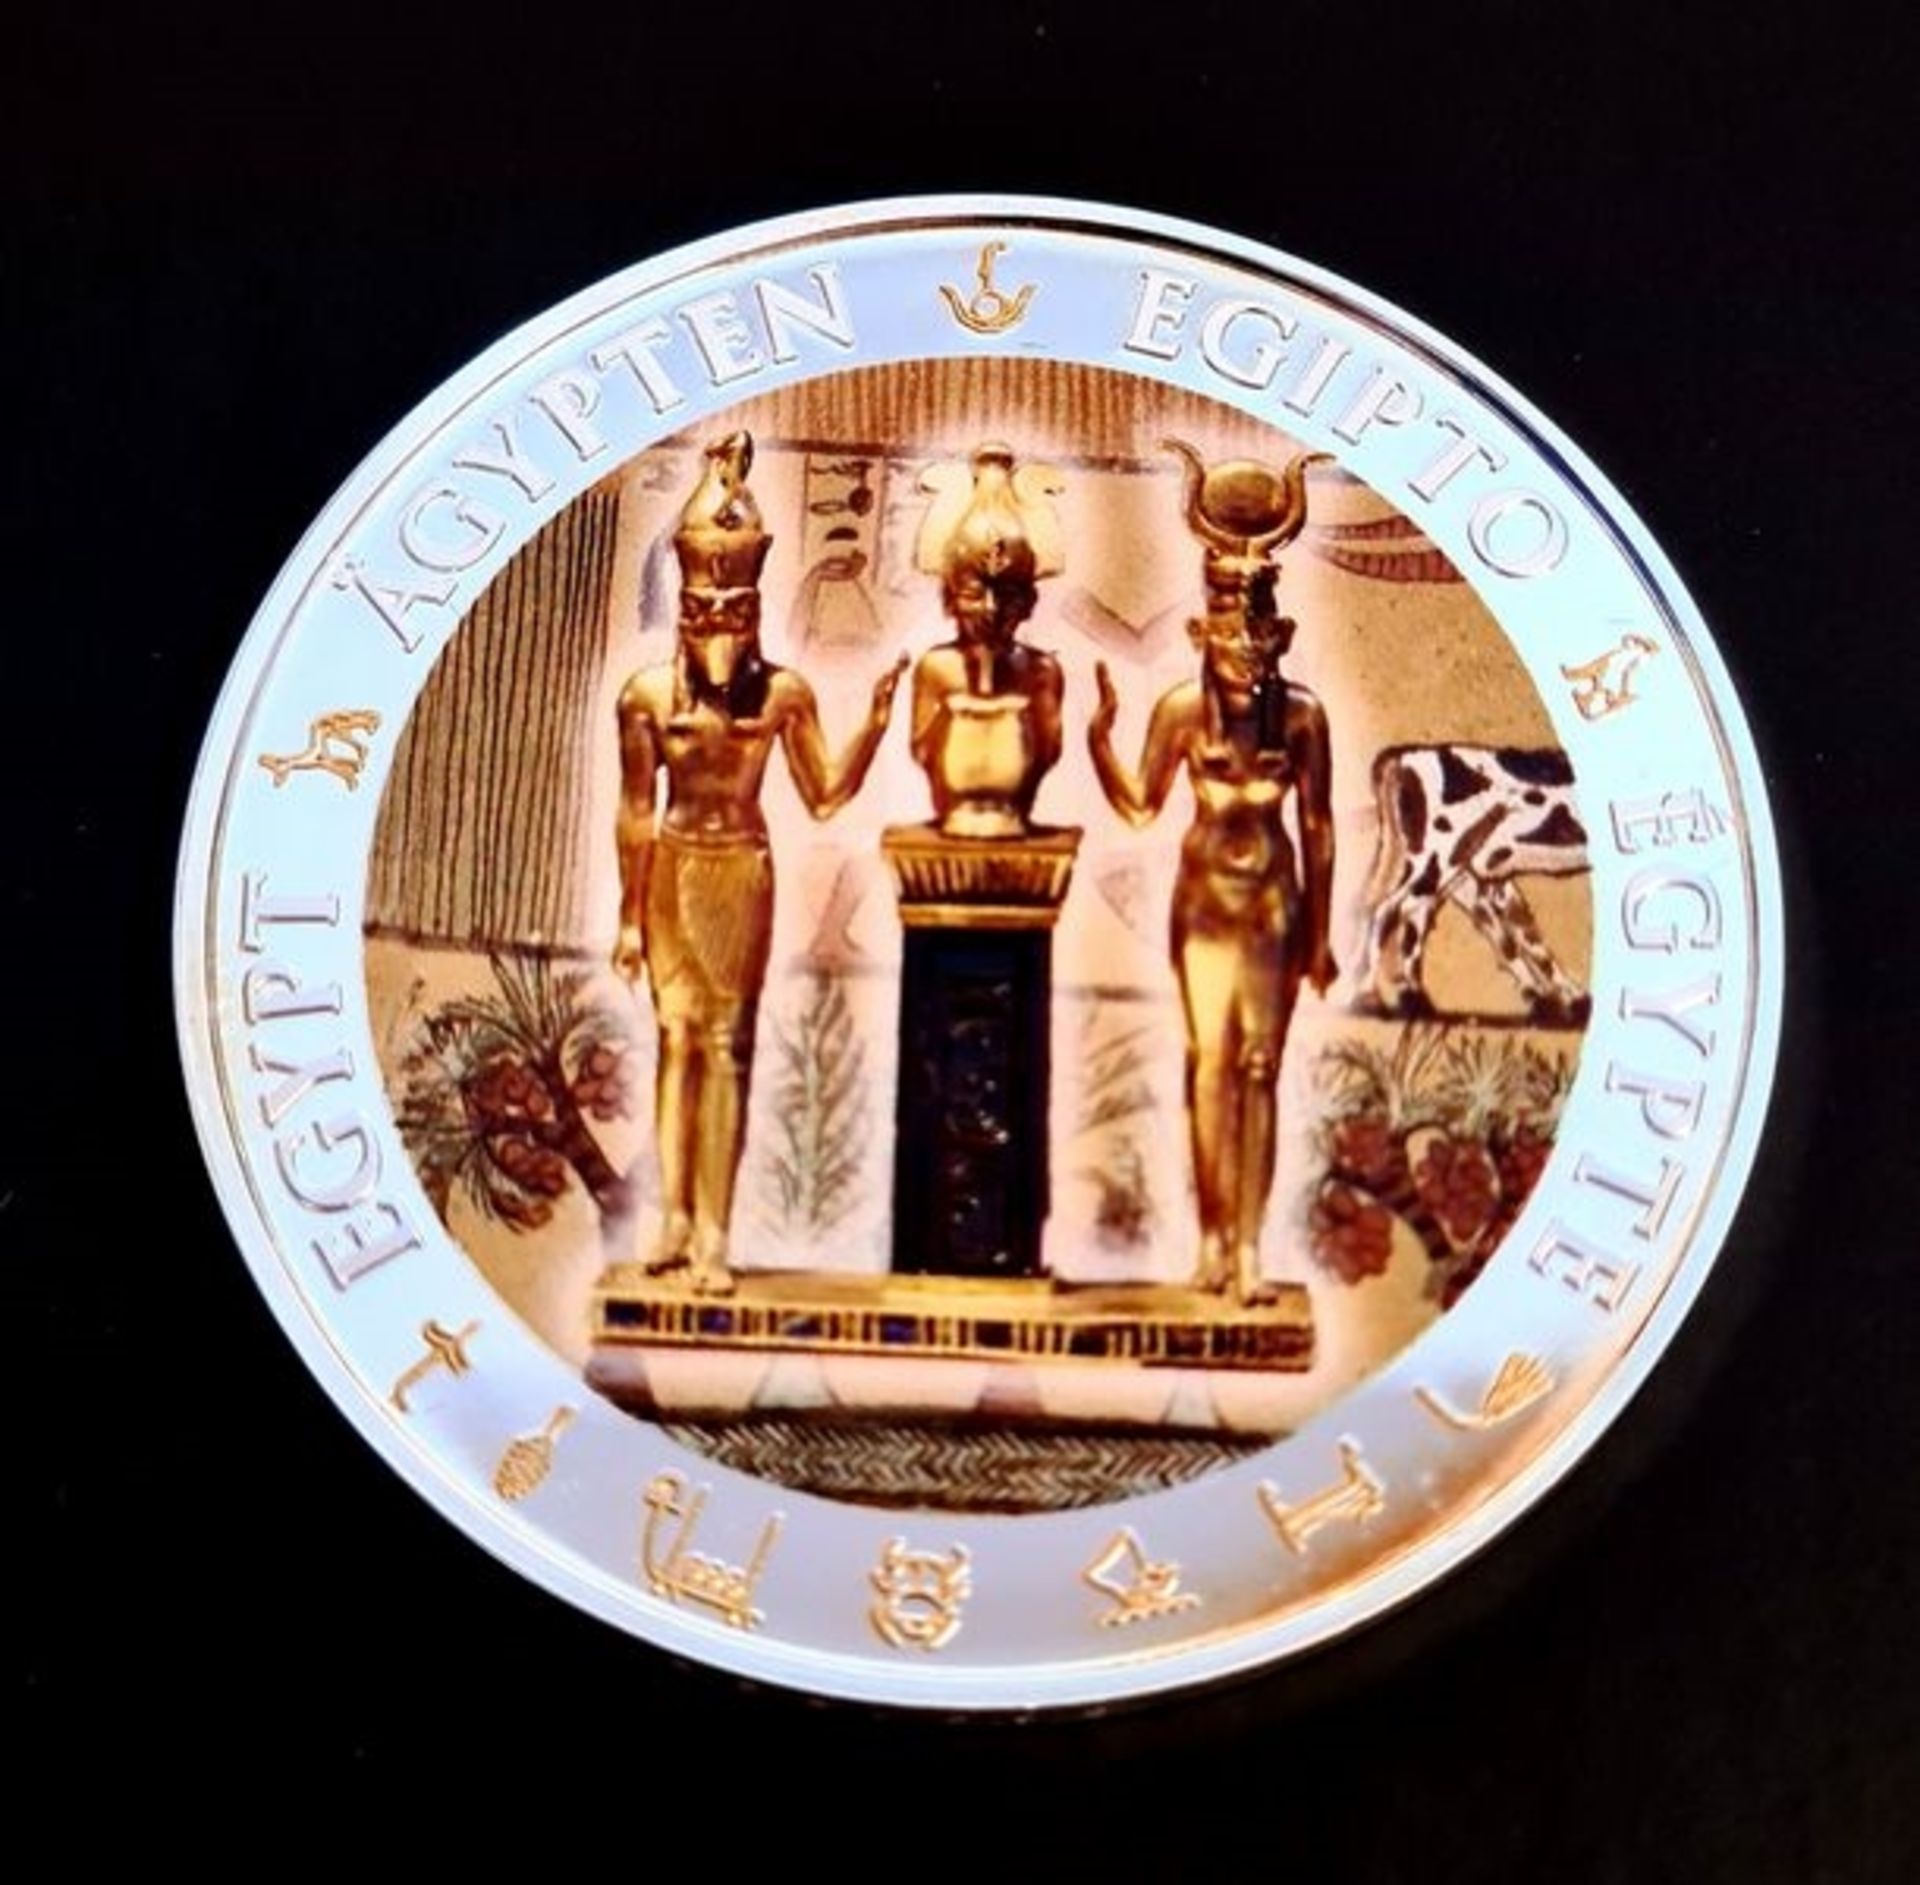 1 Fiji Dollar , 2012, Silber 999, Durchmesser: 40mm, Gwicht: 20 Gramm., mit Zertifikat , in Etui - Image 2 of 2